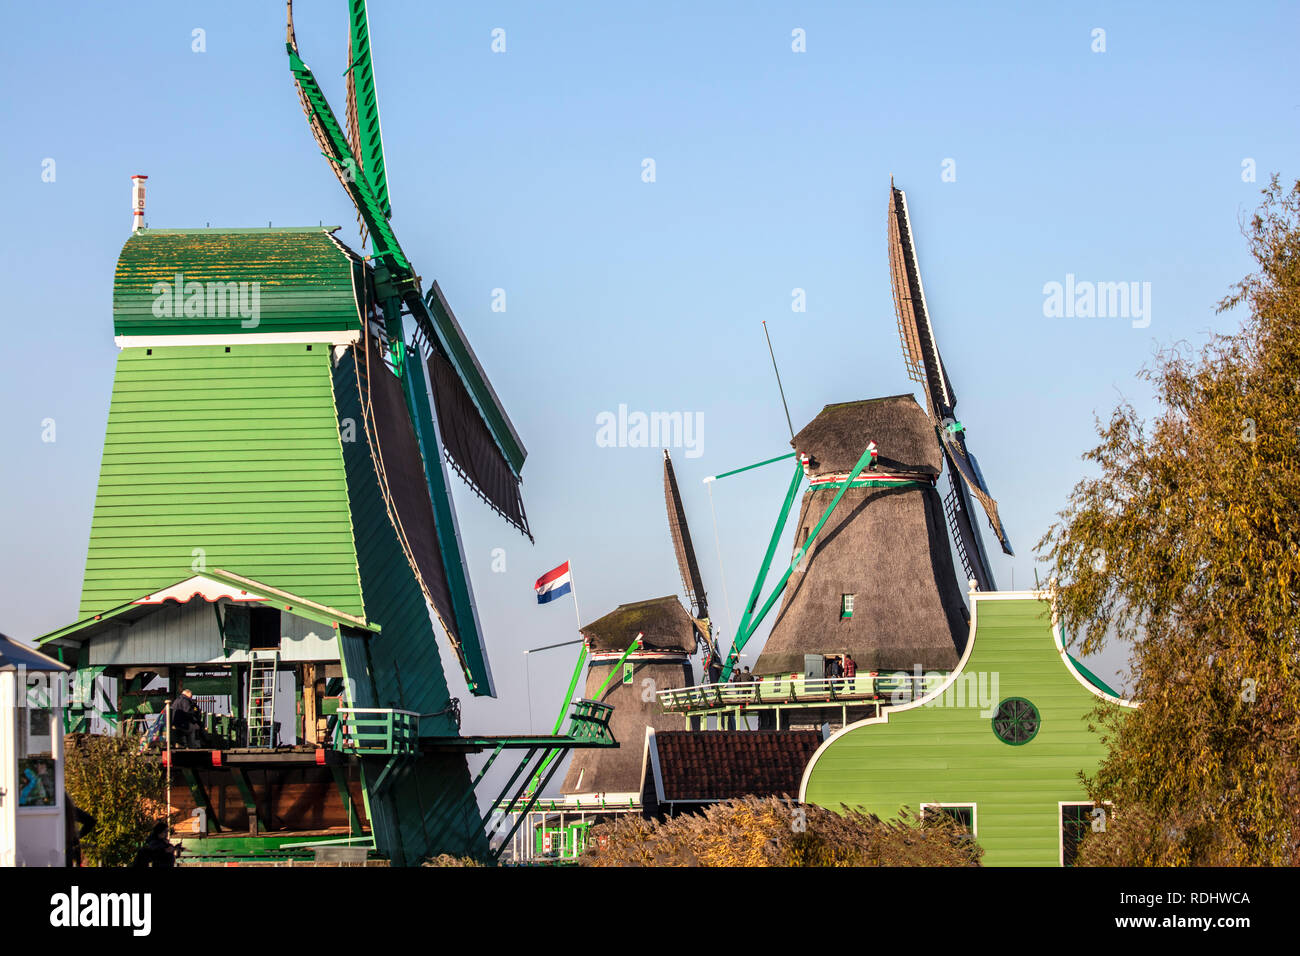 Niederlande, "Zaanse Schans" in Zaandam, Open air touristische Attraktion mit Windmühlen und Häuser, vor allem aus dem 17. und 18. Jahrhundert. Stockfoto